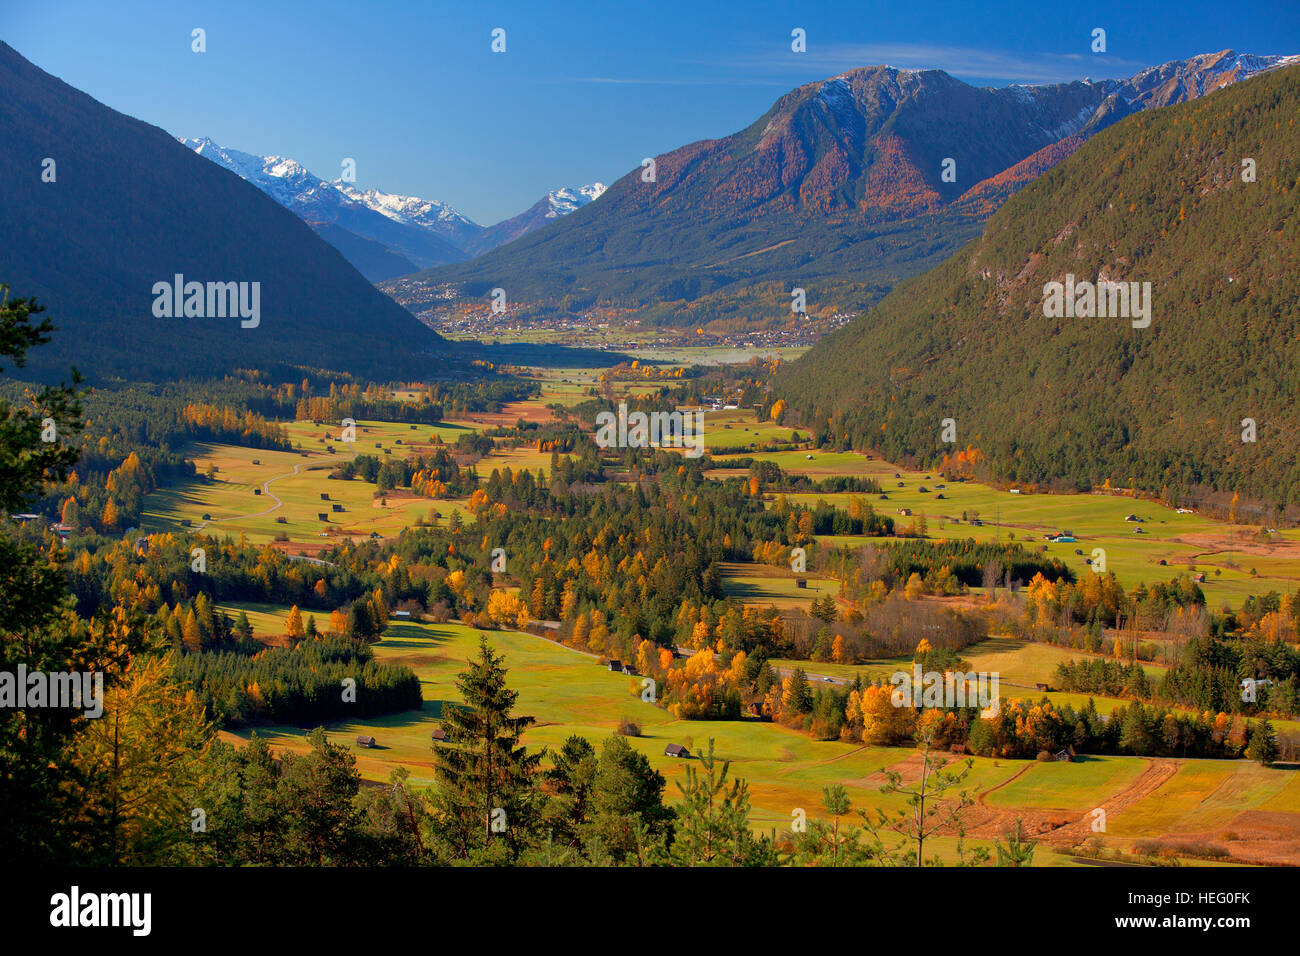 Austria, Tyrol, Gurgltal nearby Imst and Tarrenz Stock Photo